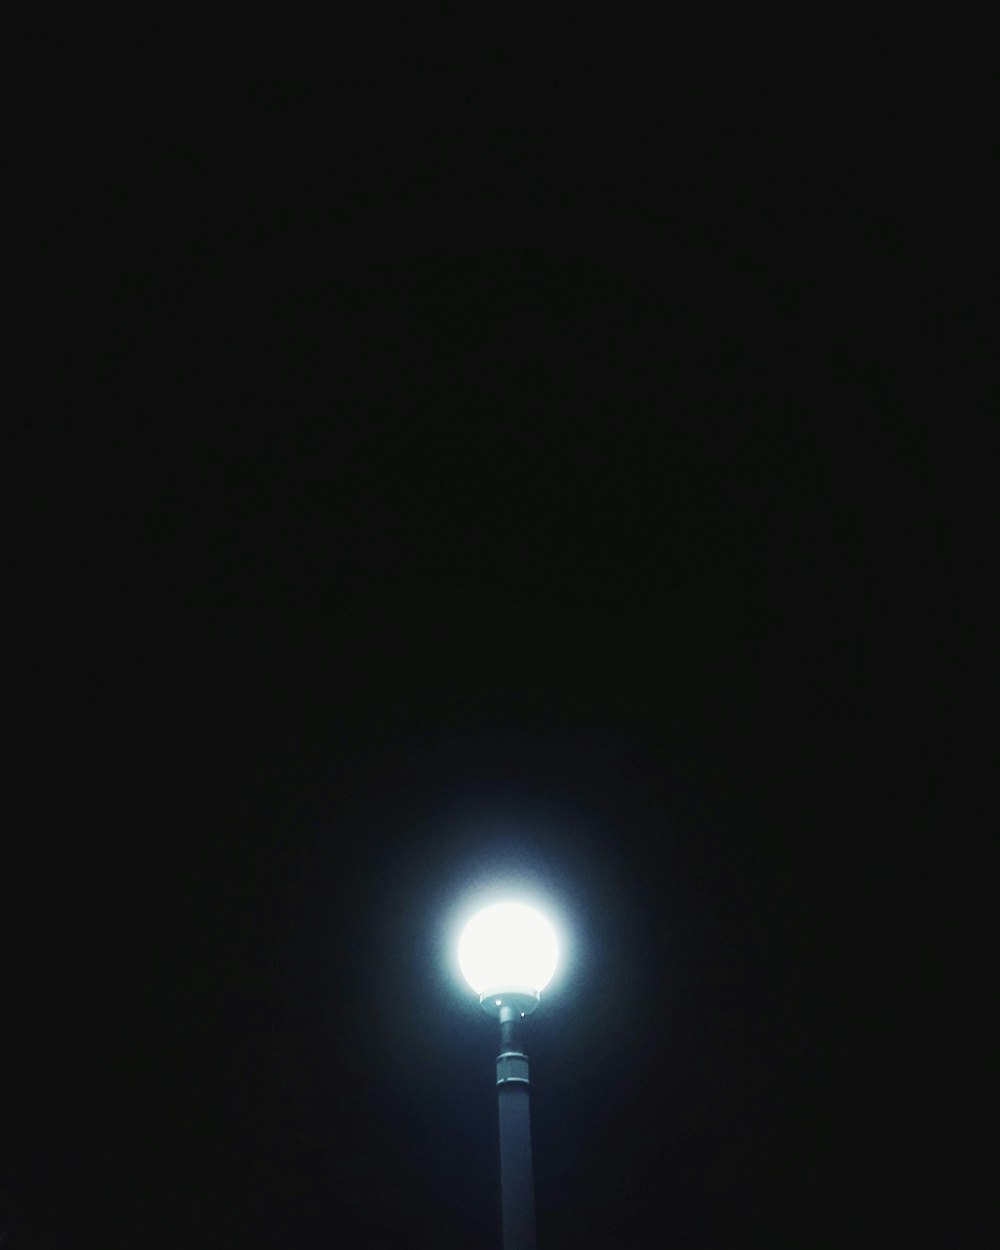 lampadina bianca accesa durante la notte